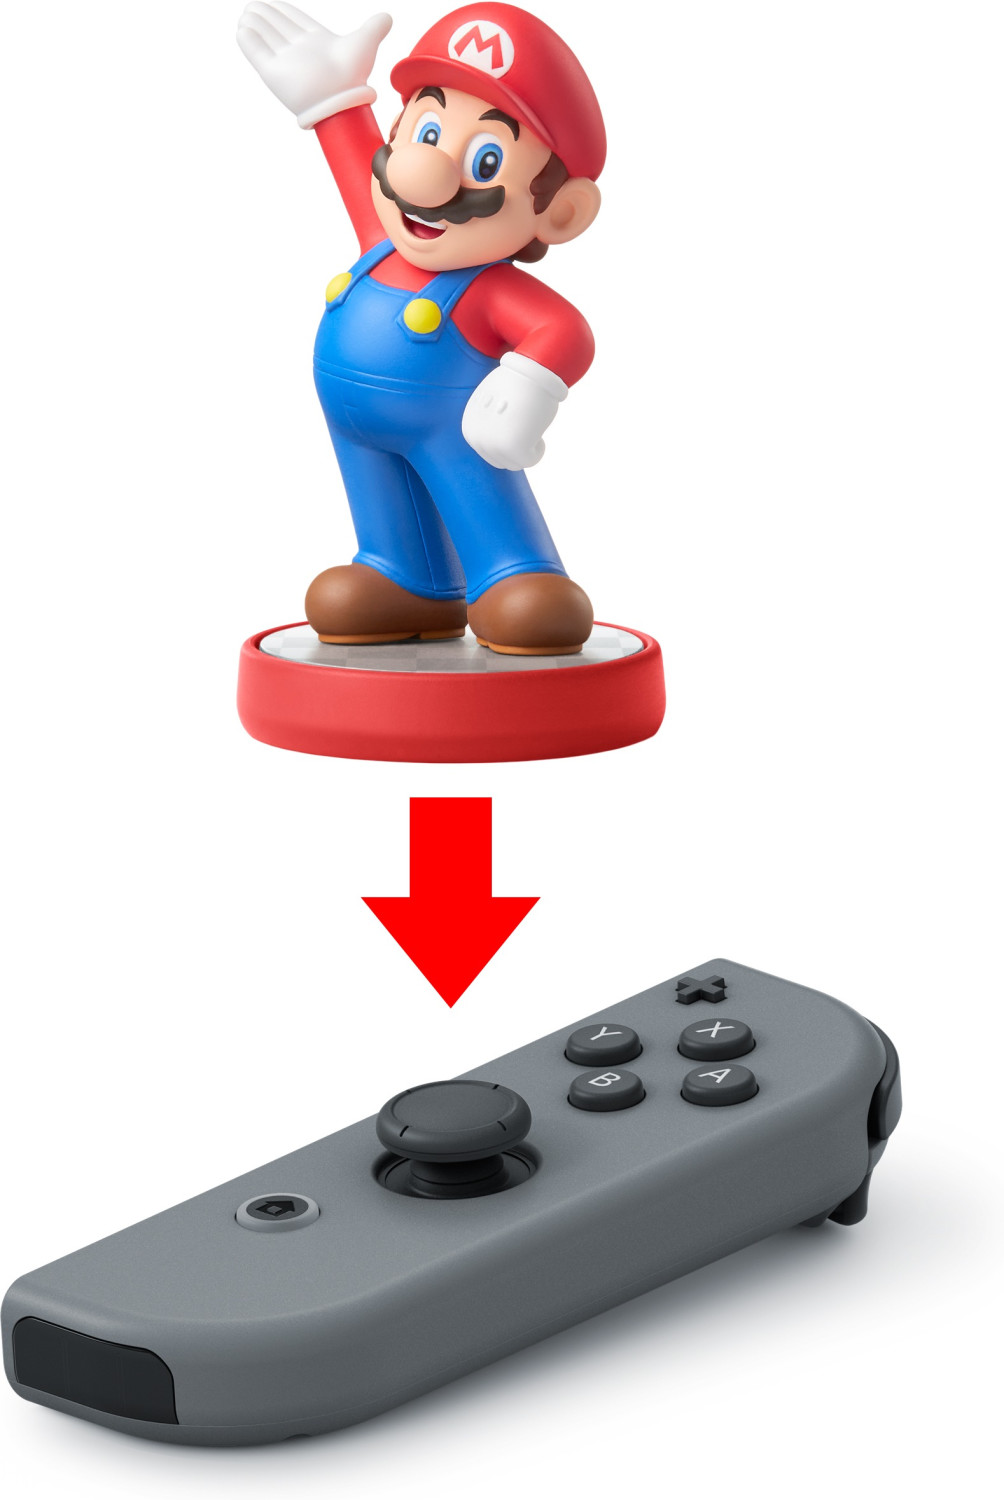 Soldes Nintendo Switch Joy-Con paire de manettes grises 2024 au